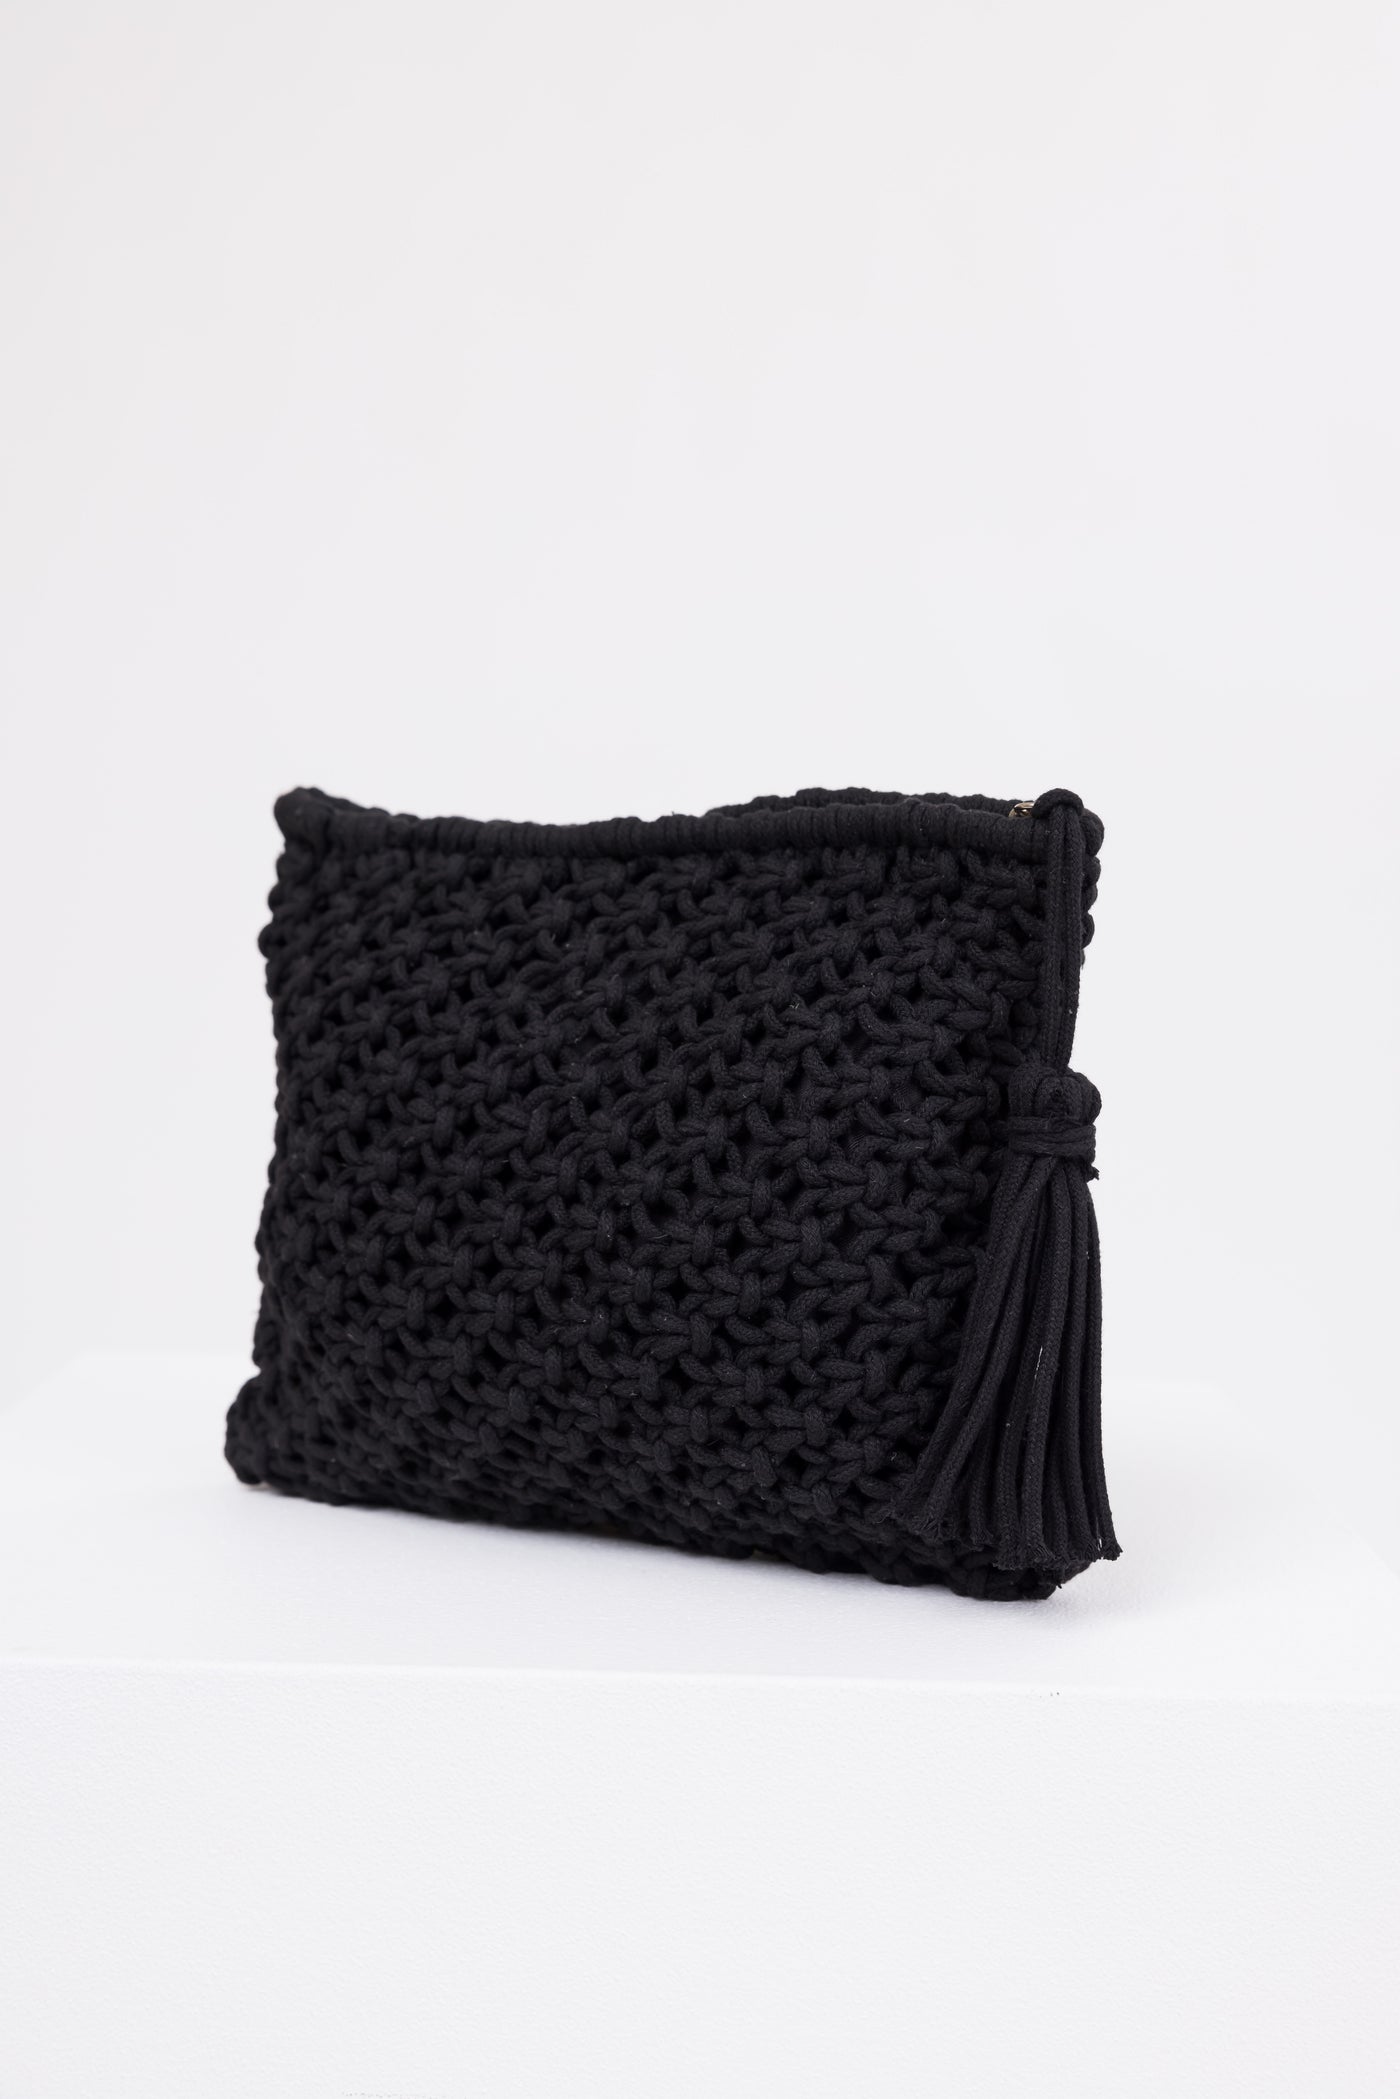 Black Crochet Clutch Tassel Purse